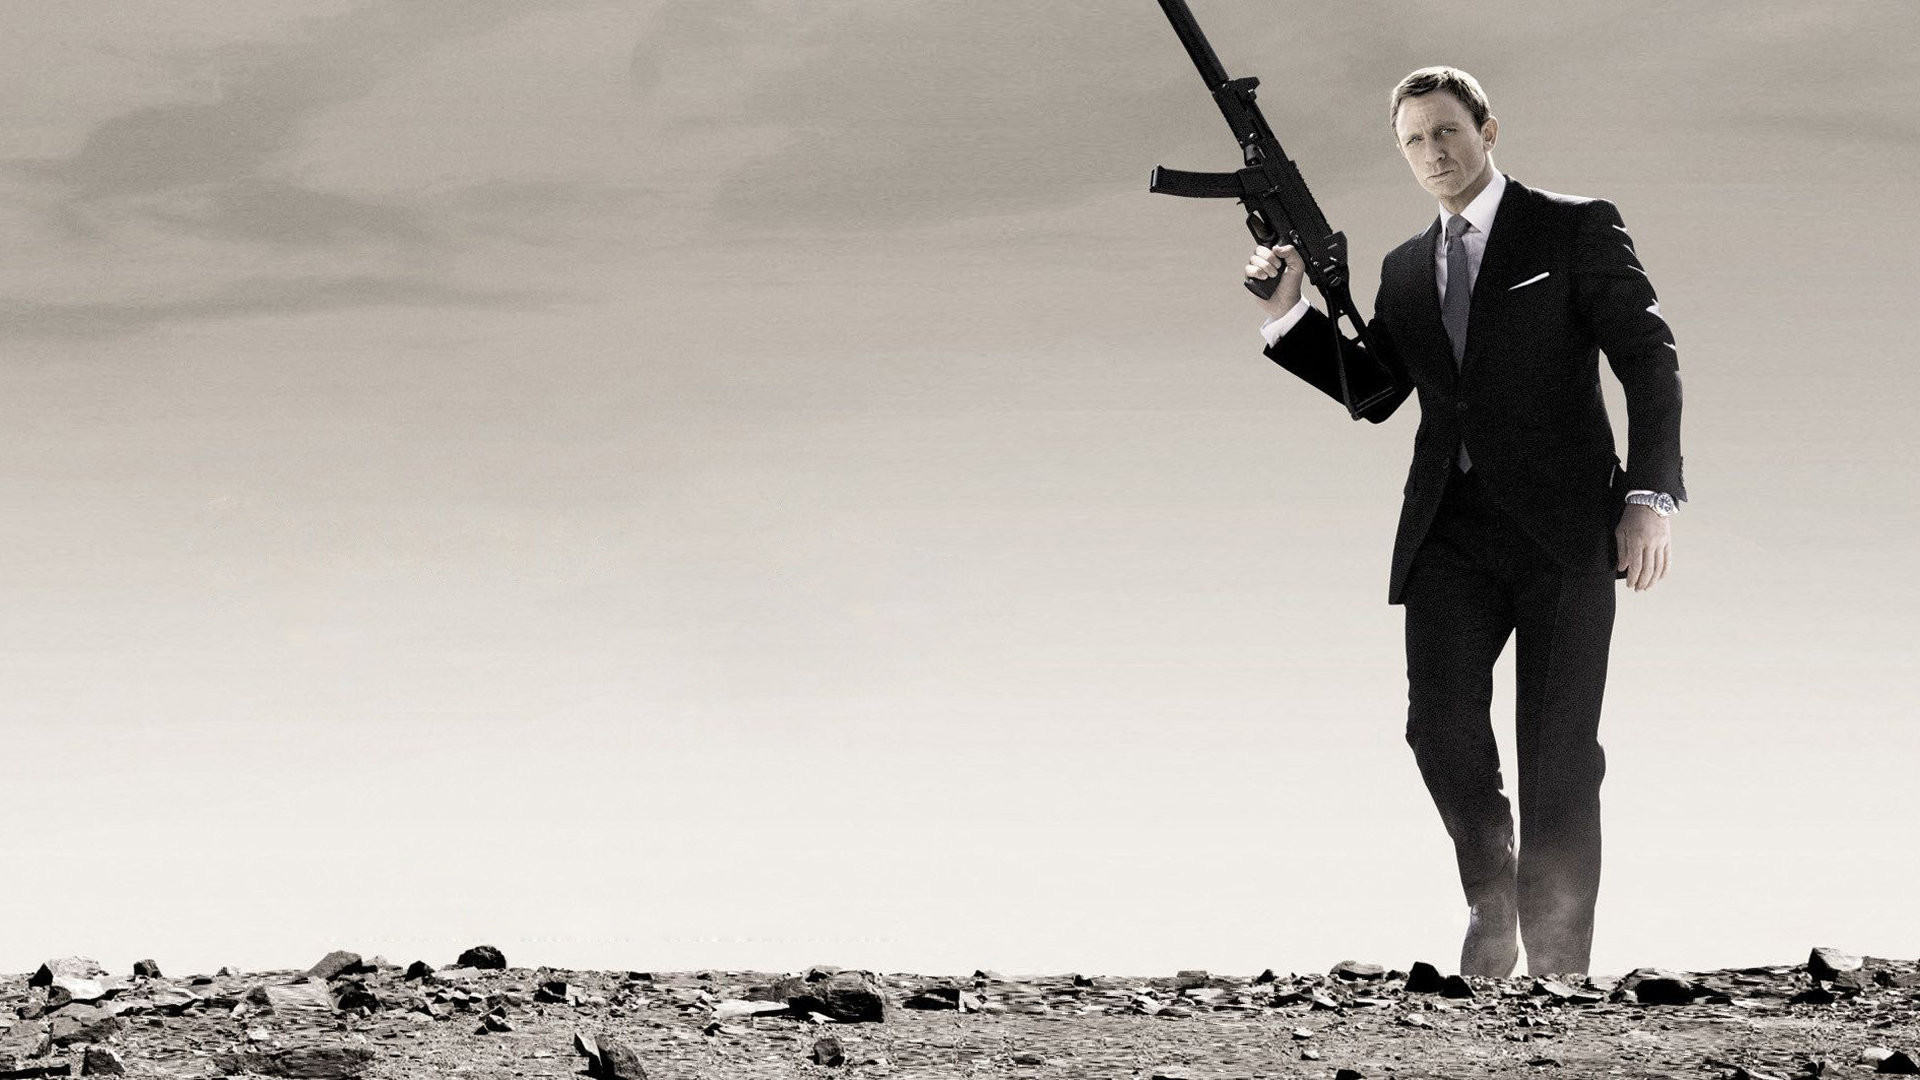 james bond 007 fondo de pantalla,en pie,traje,deporte de tiro,disparo,ropa formal